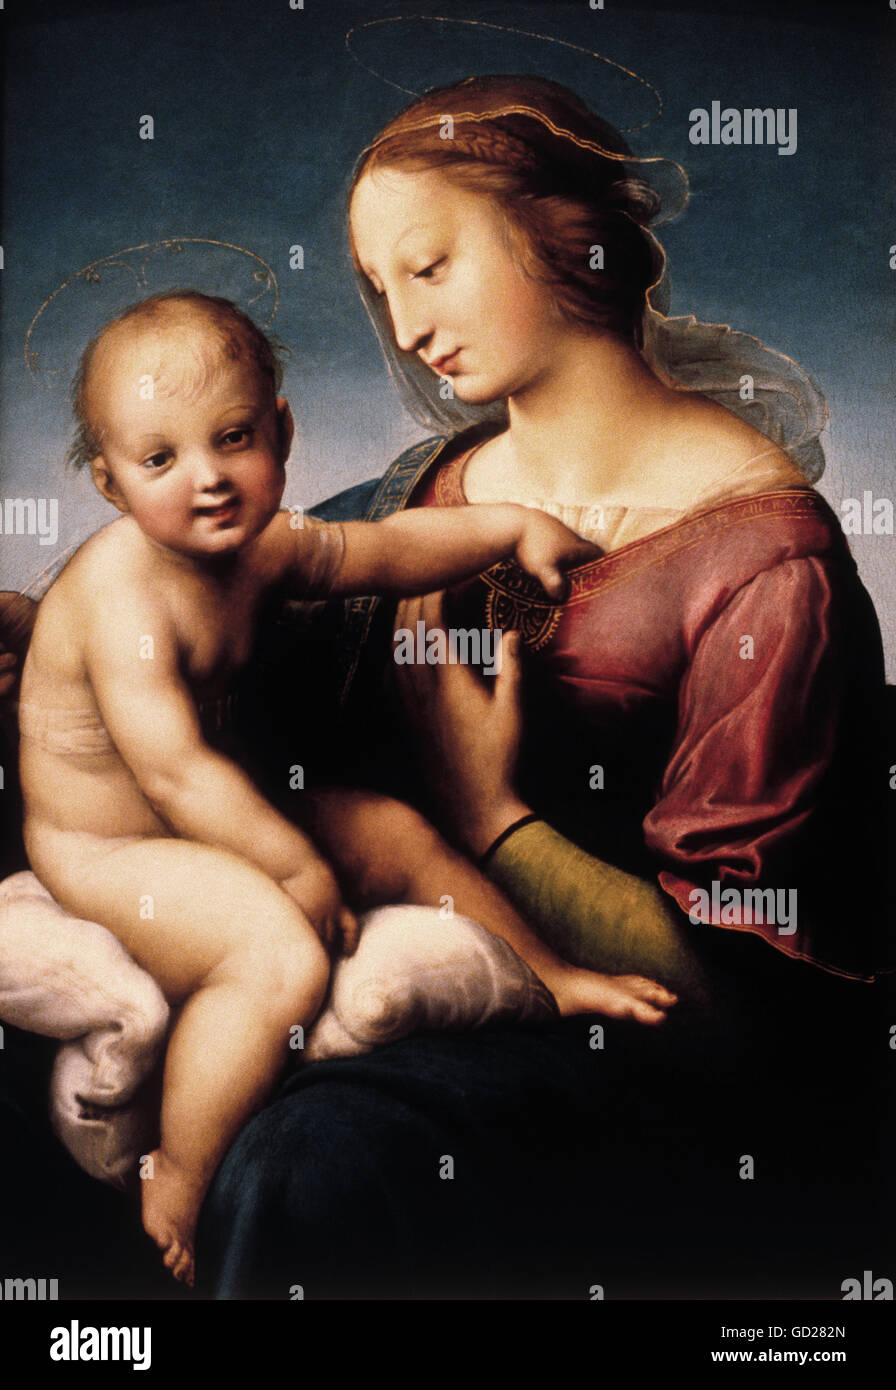 Beaux-arts, Raphaël, (Raffaello Sanzio da Urbino), (1483-1520), peinture, 'Grande Madonna Cowper', 1508, huile sur toile, 68 x 47 cm, National Gallery of Art, Washington, n'a pas d'auteur de l'artiste pour être effacé Banque D'Images